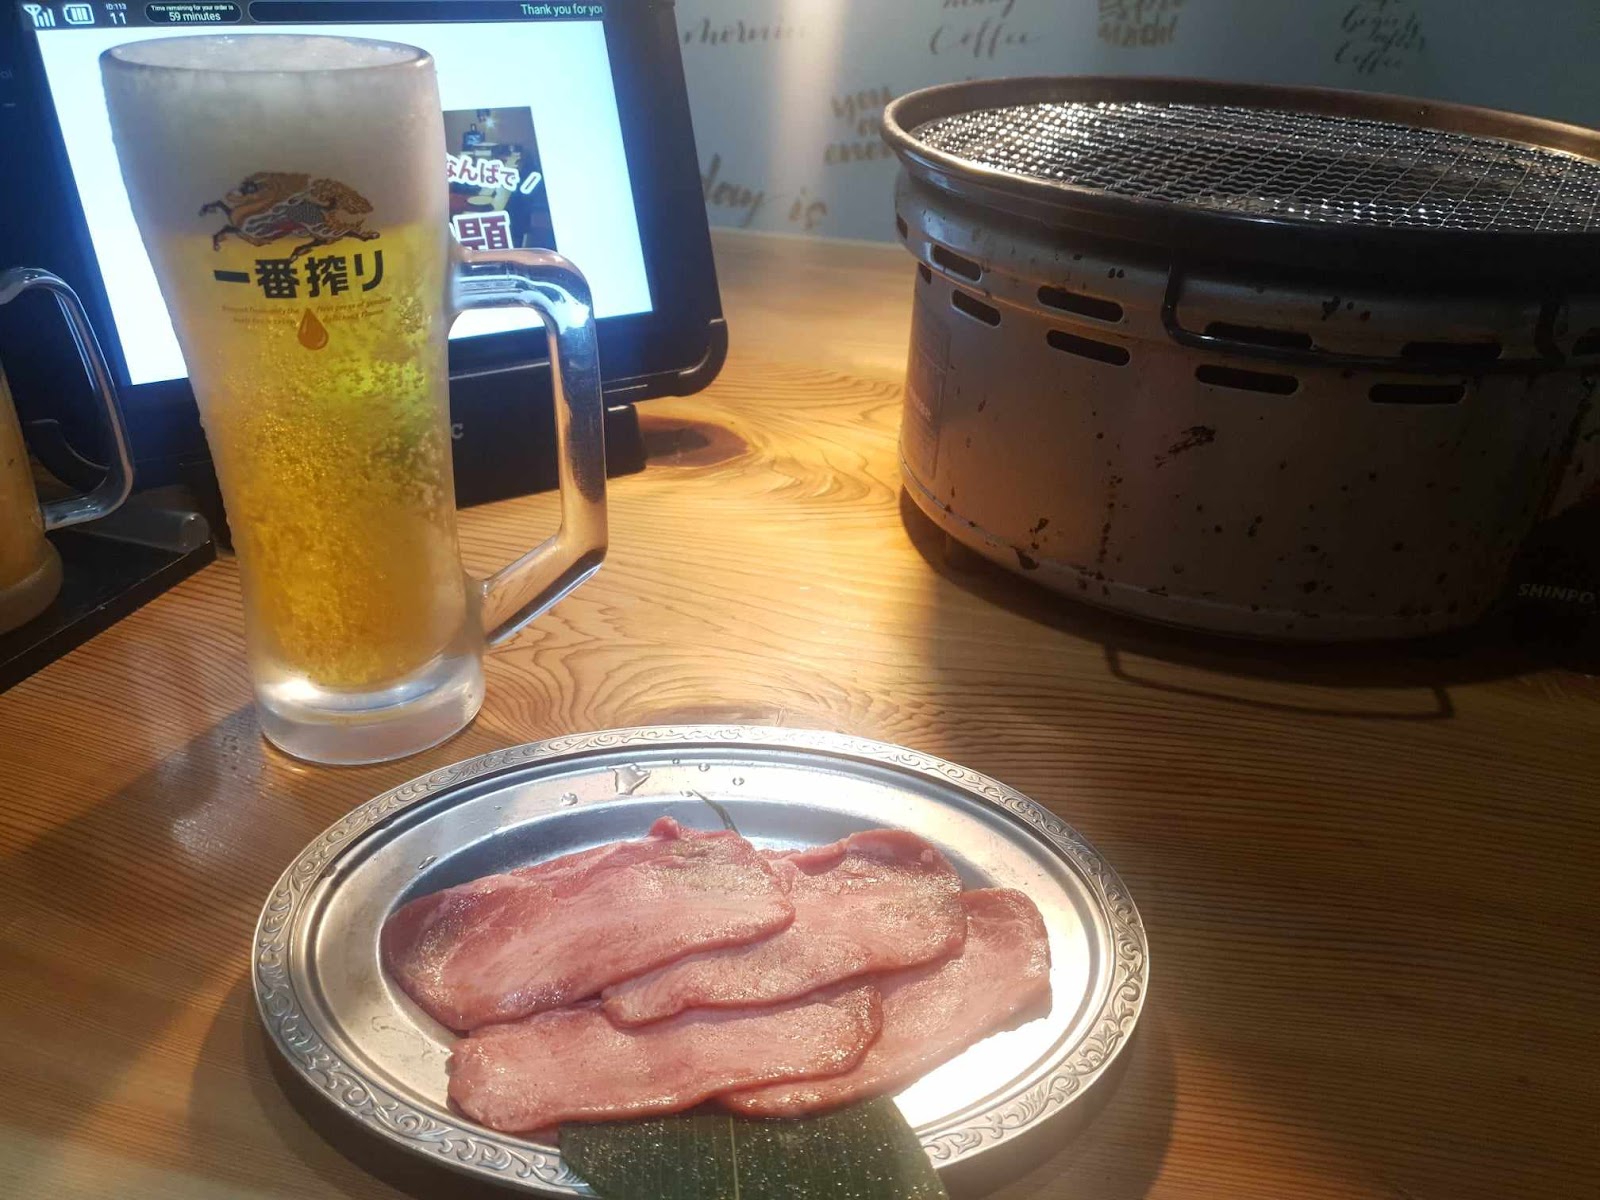 Kirin beer and thin-cut beef tongue at 焼肉力丸上本町店